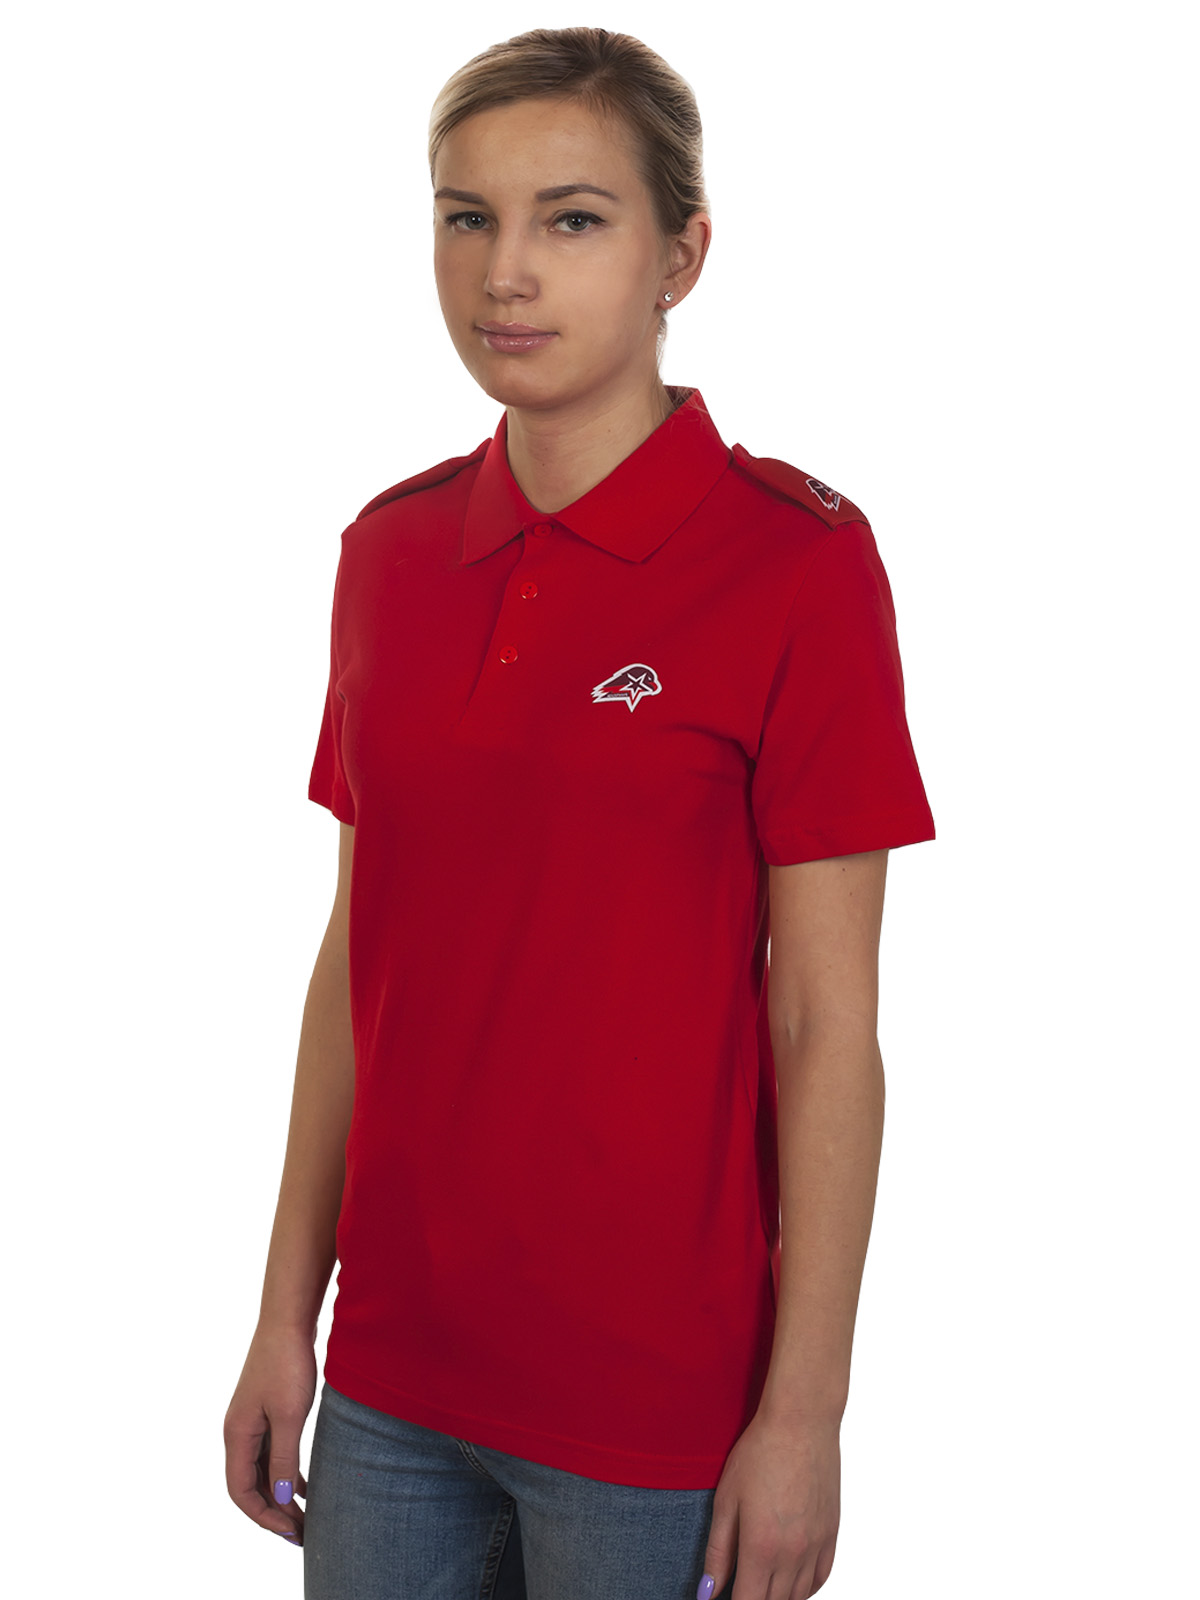 Женская футболка с эмблемой Юнармии в виде орла